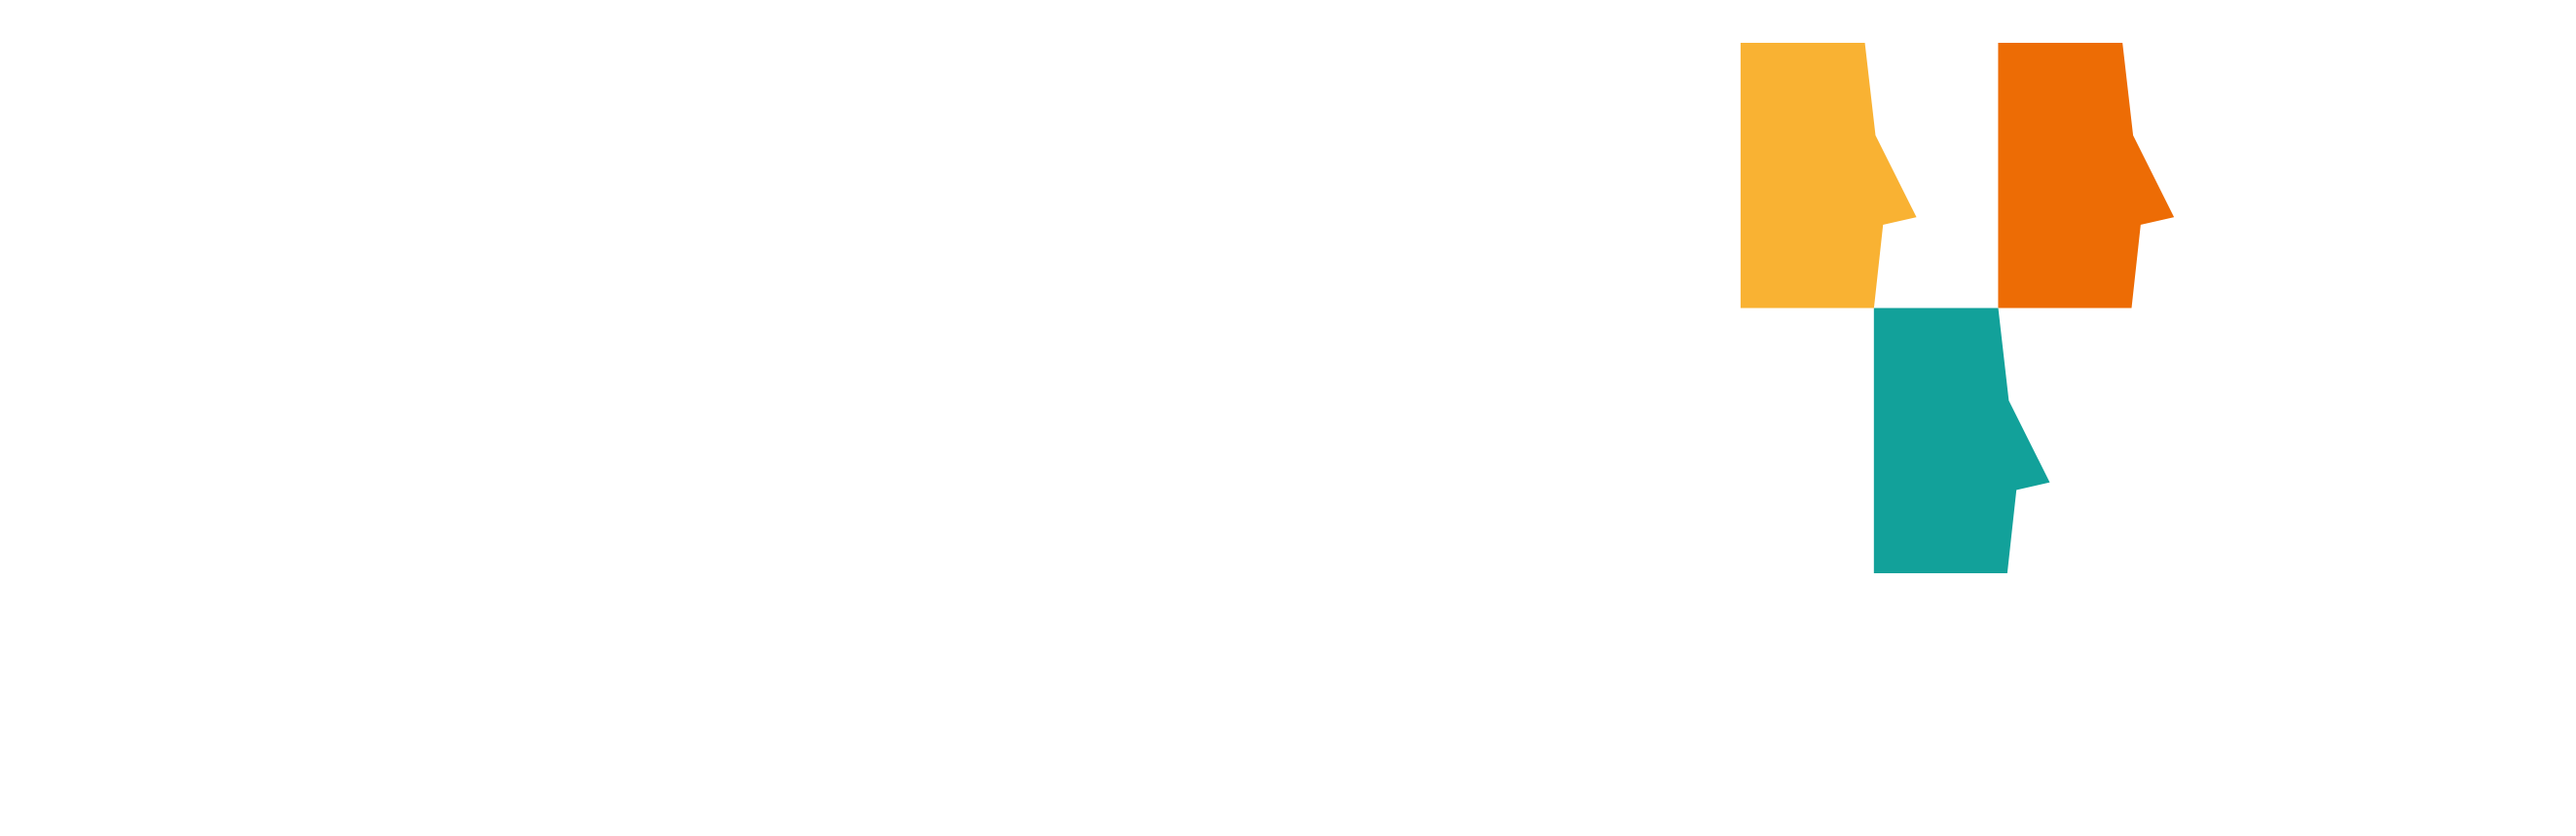 Logo Cerfrance Garonne-et-Tarn